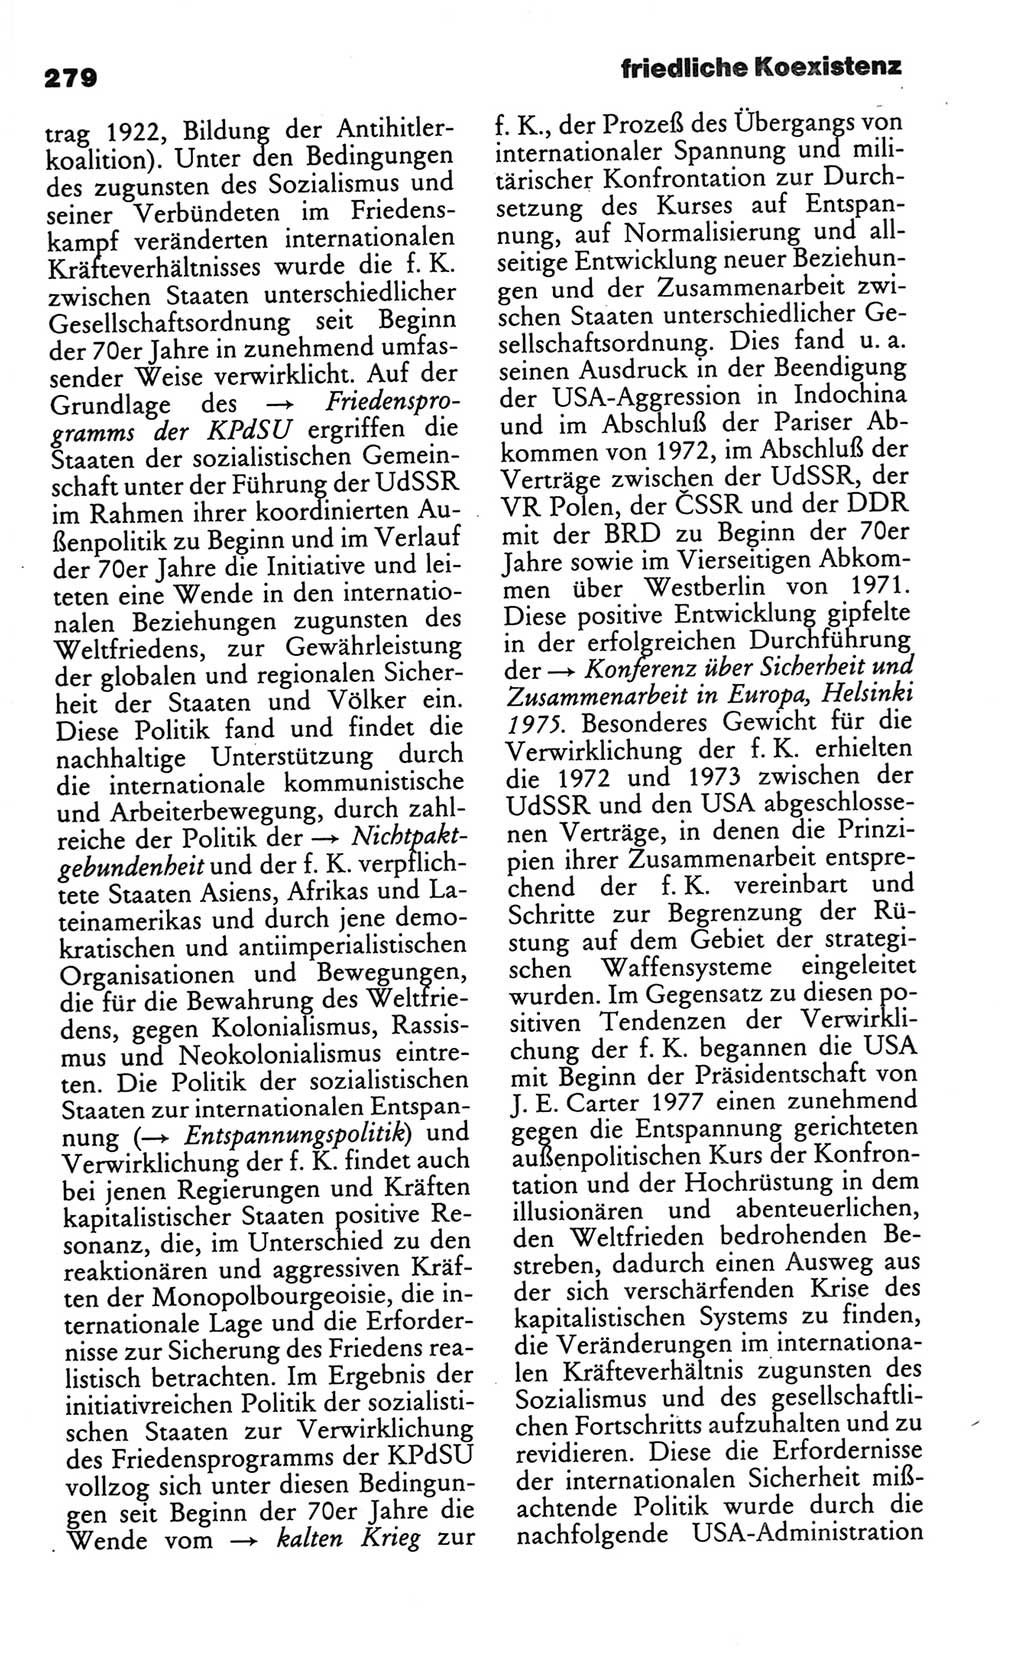 Kleines politisches Wörterbuch [Deutsche Demokratische Republik (DDR)] 1986, Seite 279 (Kl. pol. Wb. DDR 1986, S. 279)